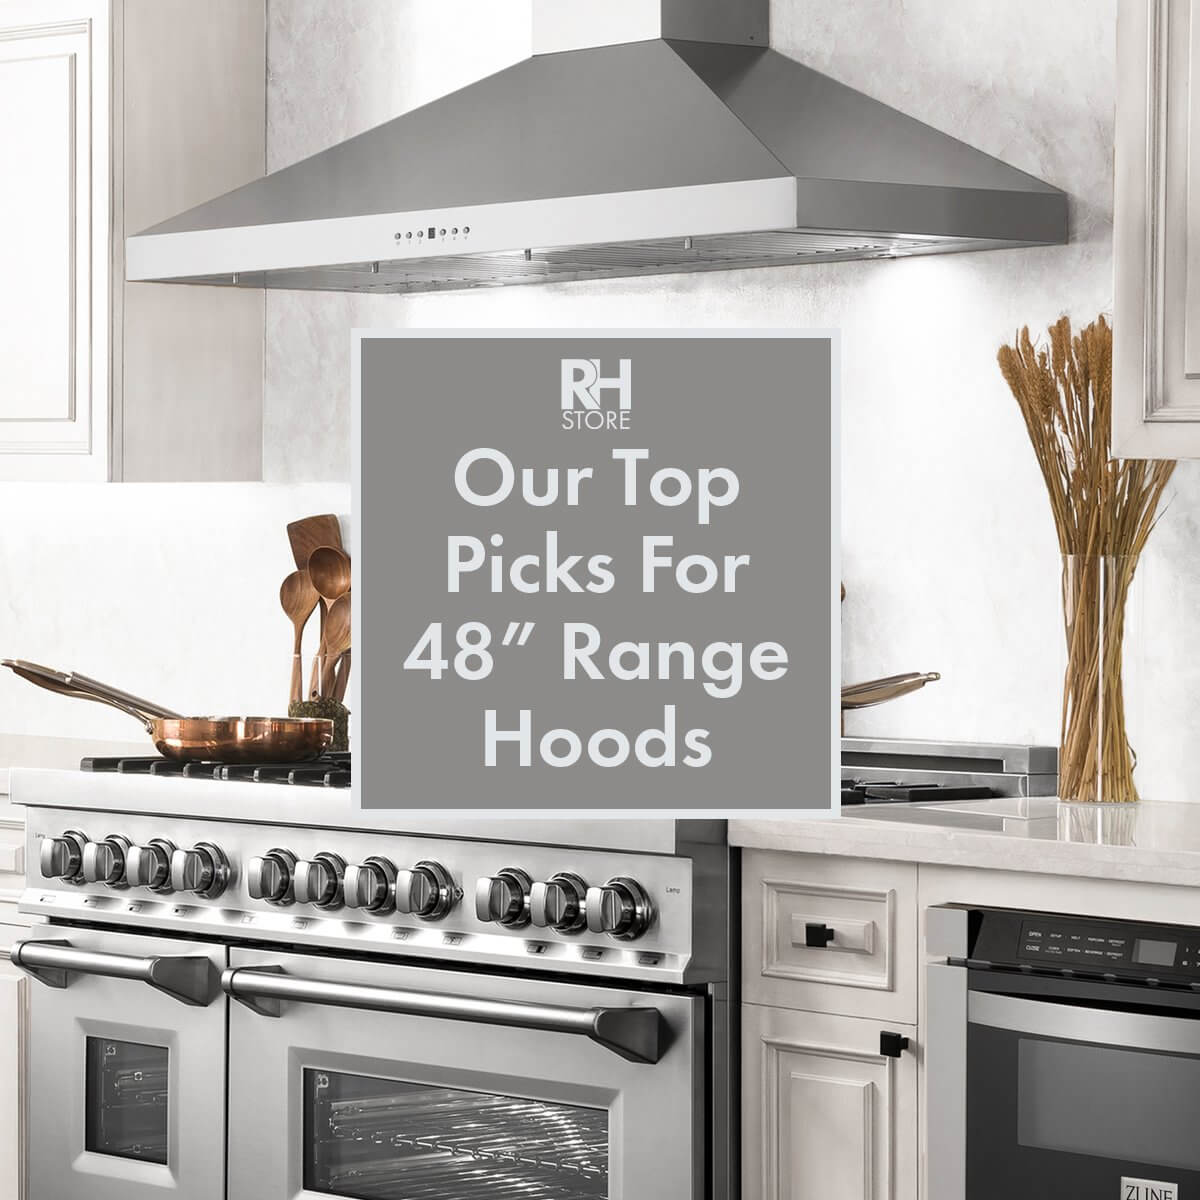 Our Top Picks For 48” Range Hoods